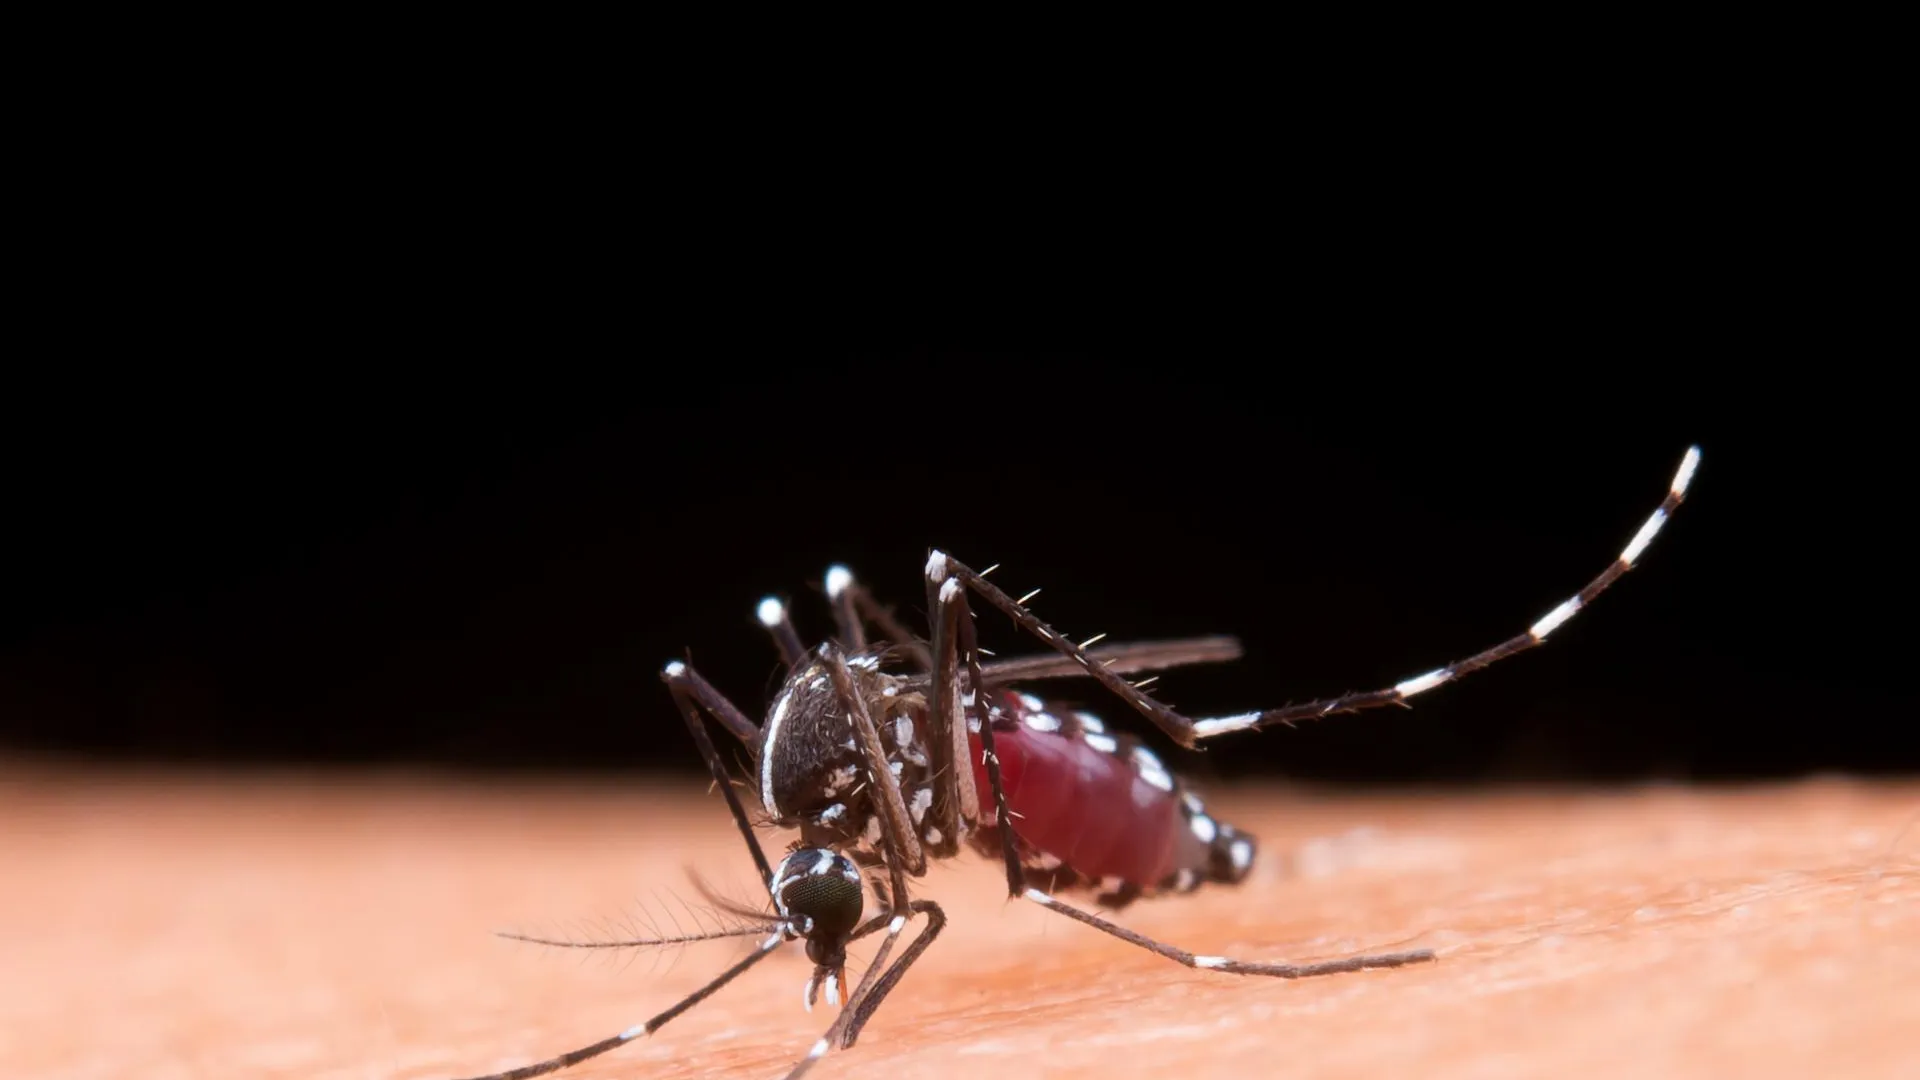 Браслет или ультразвук: названы способы эффективной защиты от комаров